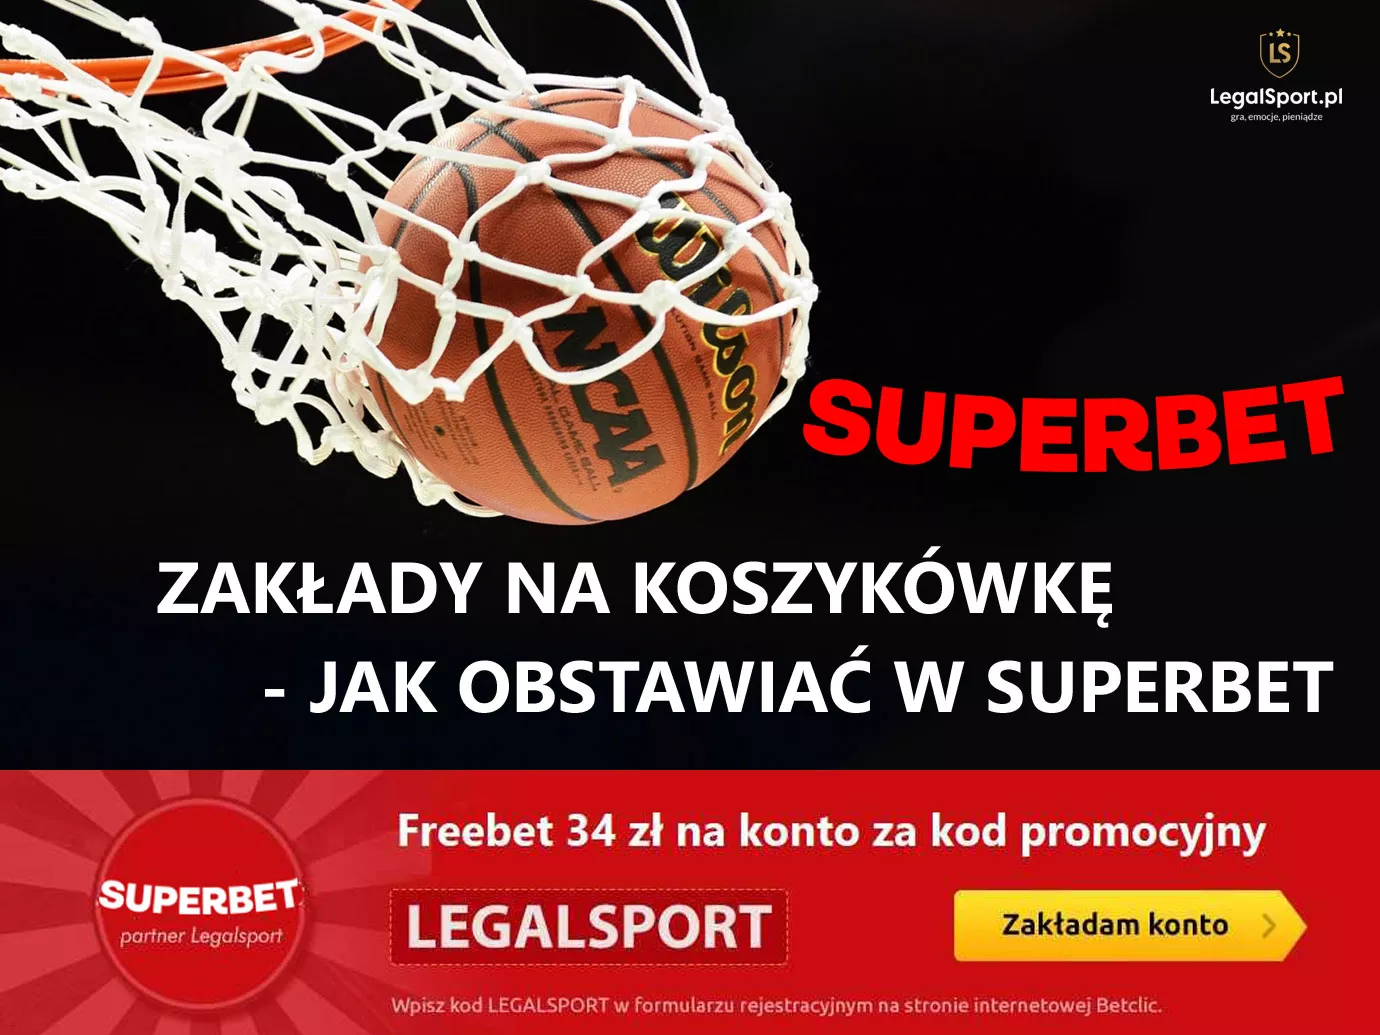 Oferta na koszykówkę w Superbet - zdjęcie główne do tekstu